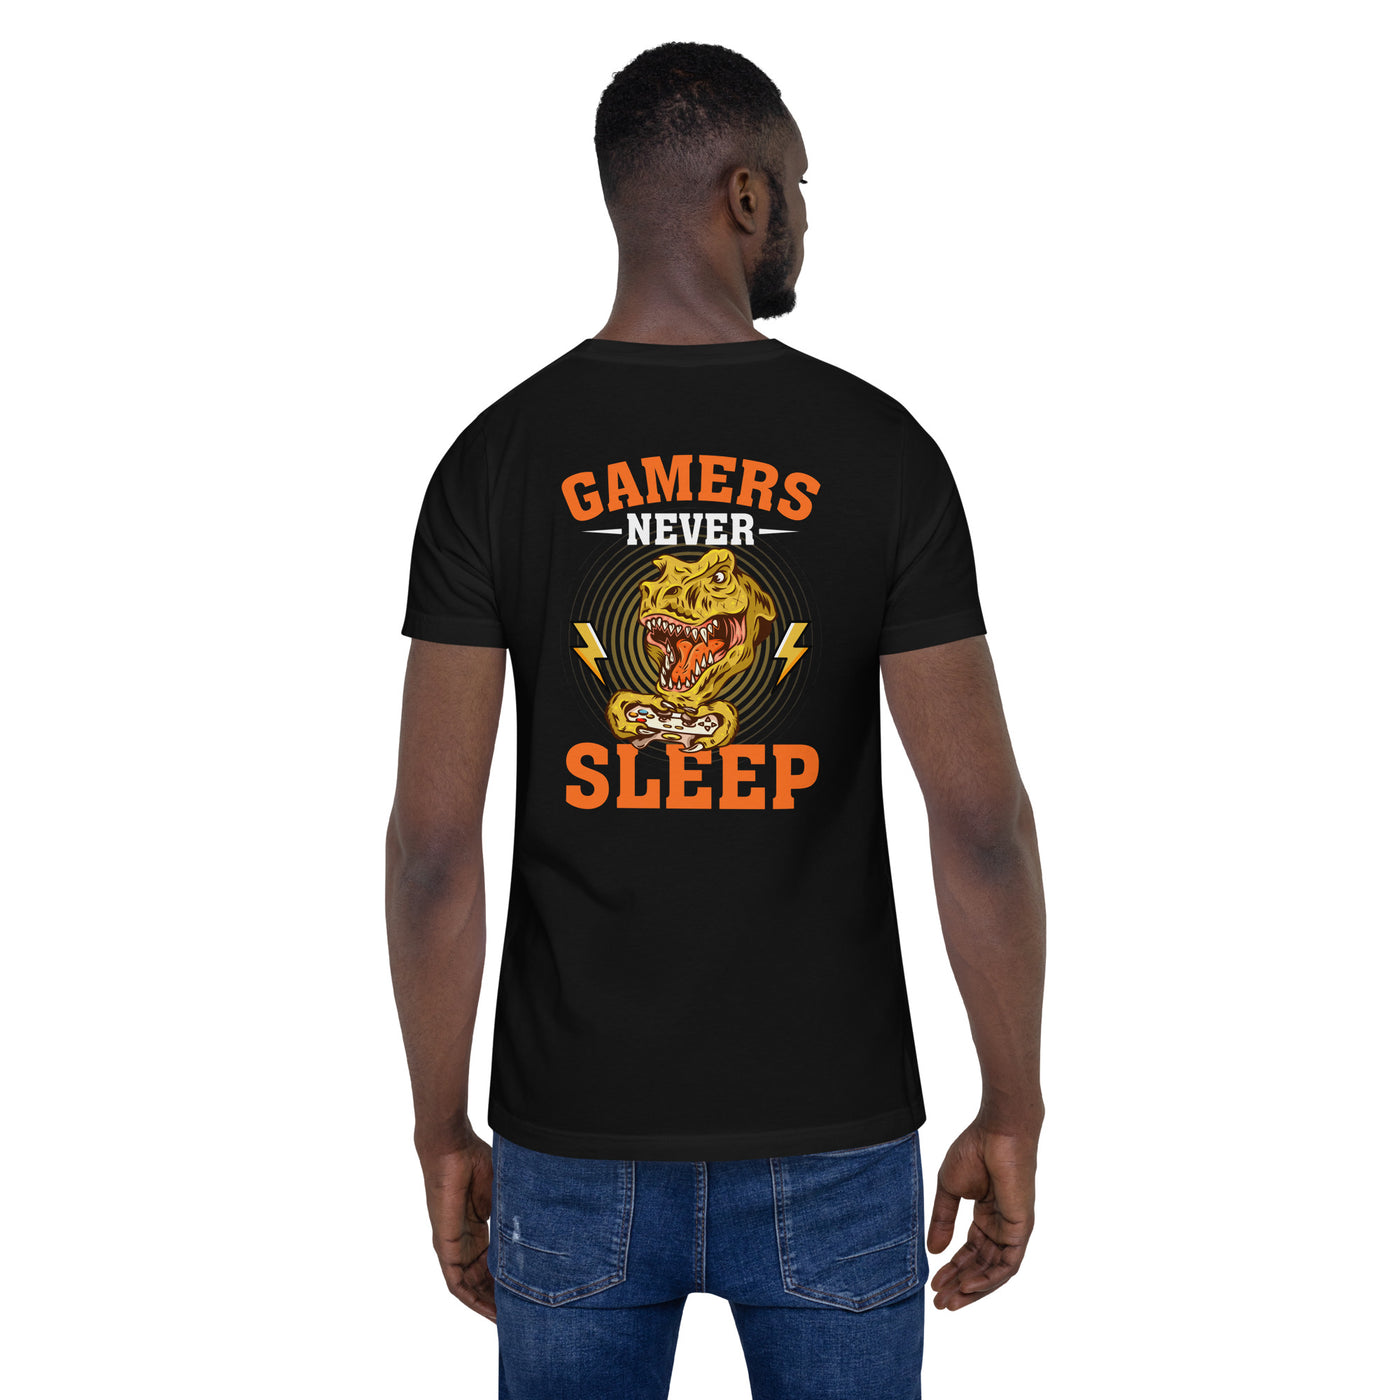 Gamers never sleep V2 - Unisex t-shirt ( Back Print )